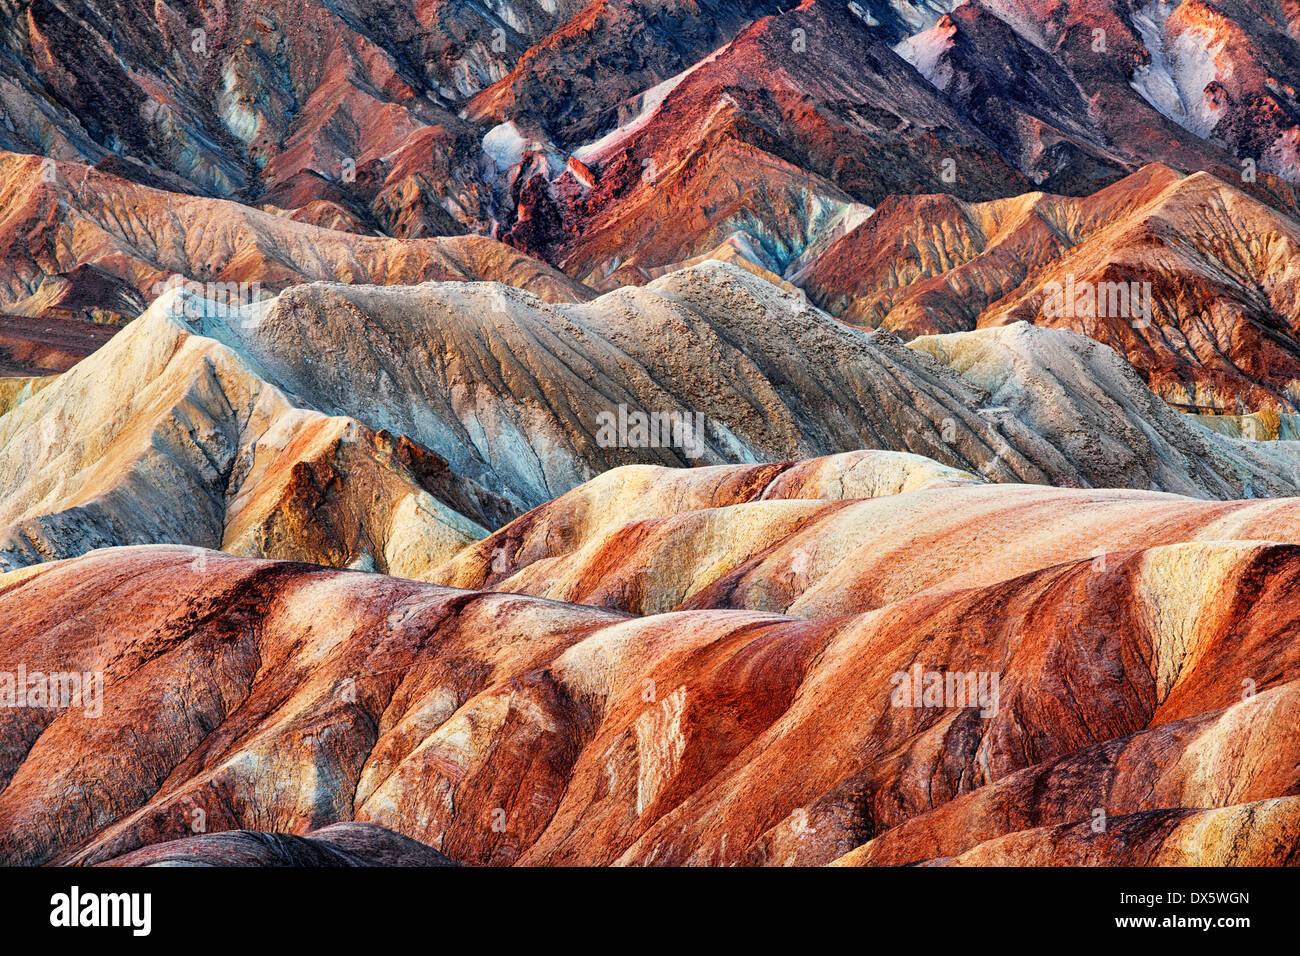 Bürgerlichen Dämmerung verstärkt die spektakulären Farben Golden Canyon Badlands im kalifornischen Death Valley National Park. Stockfoto